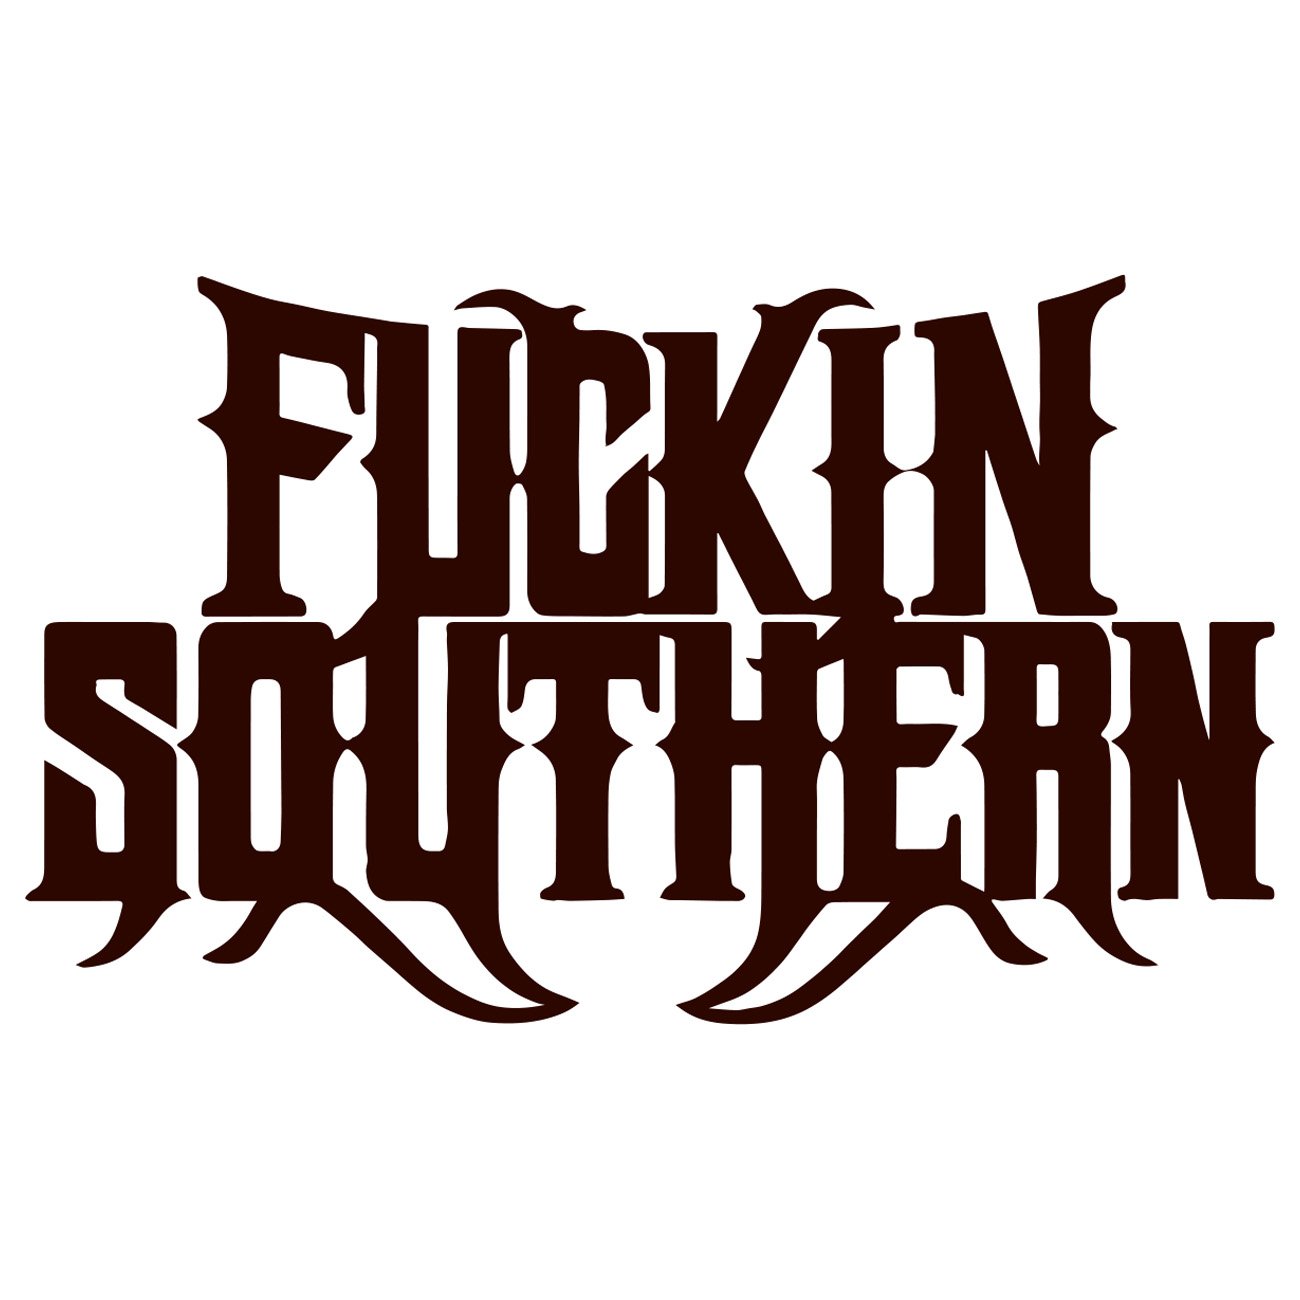 Fucking Southern